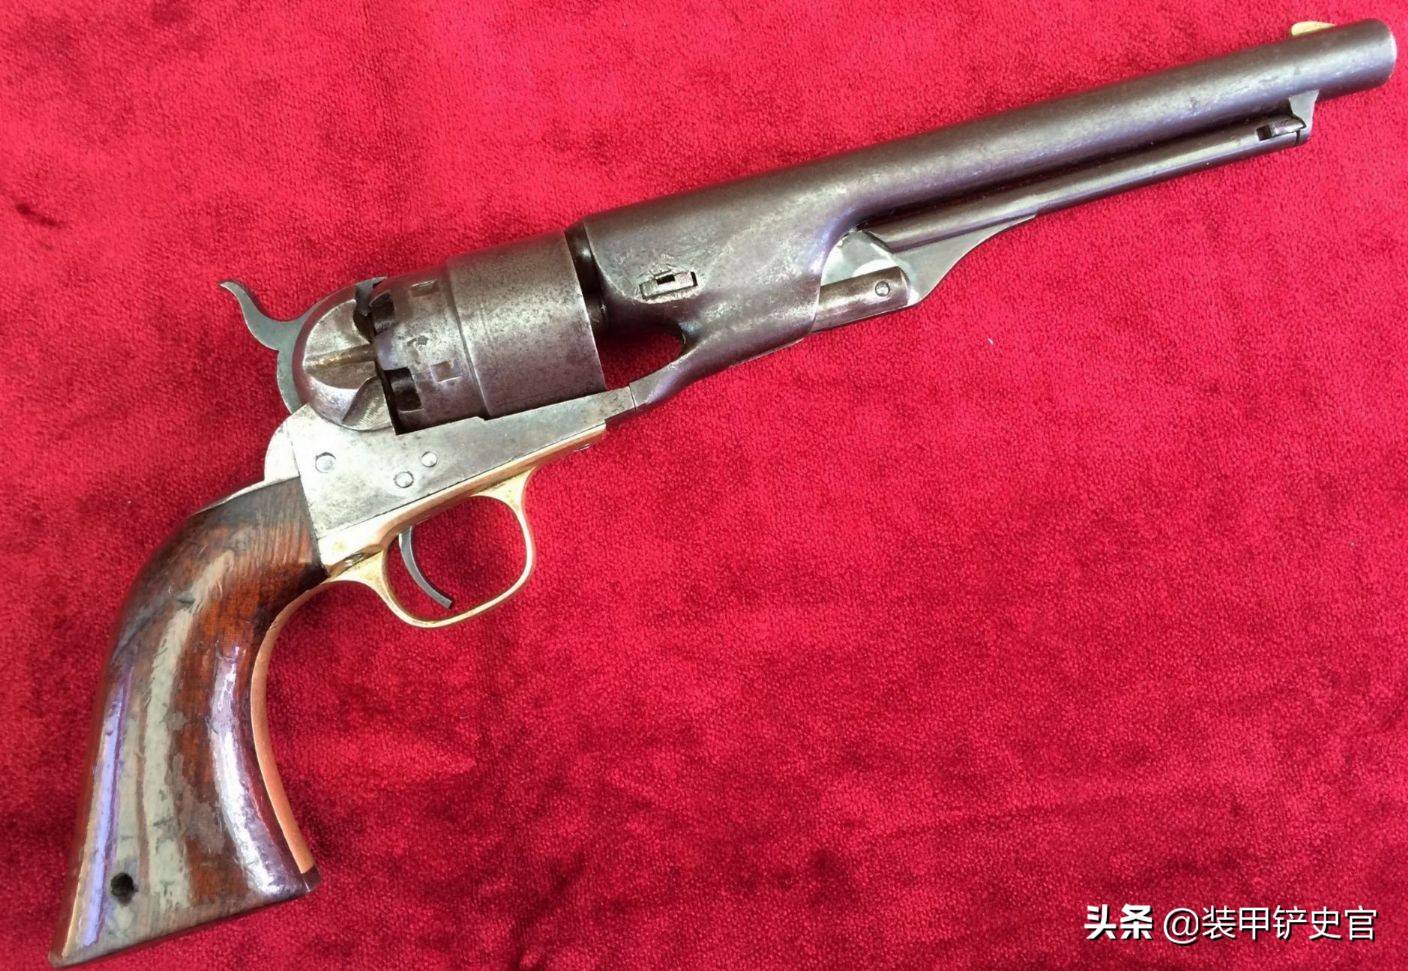 柯尔特m1860陆军型转轮手枪,在美国内战时期被交战双方使用.